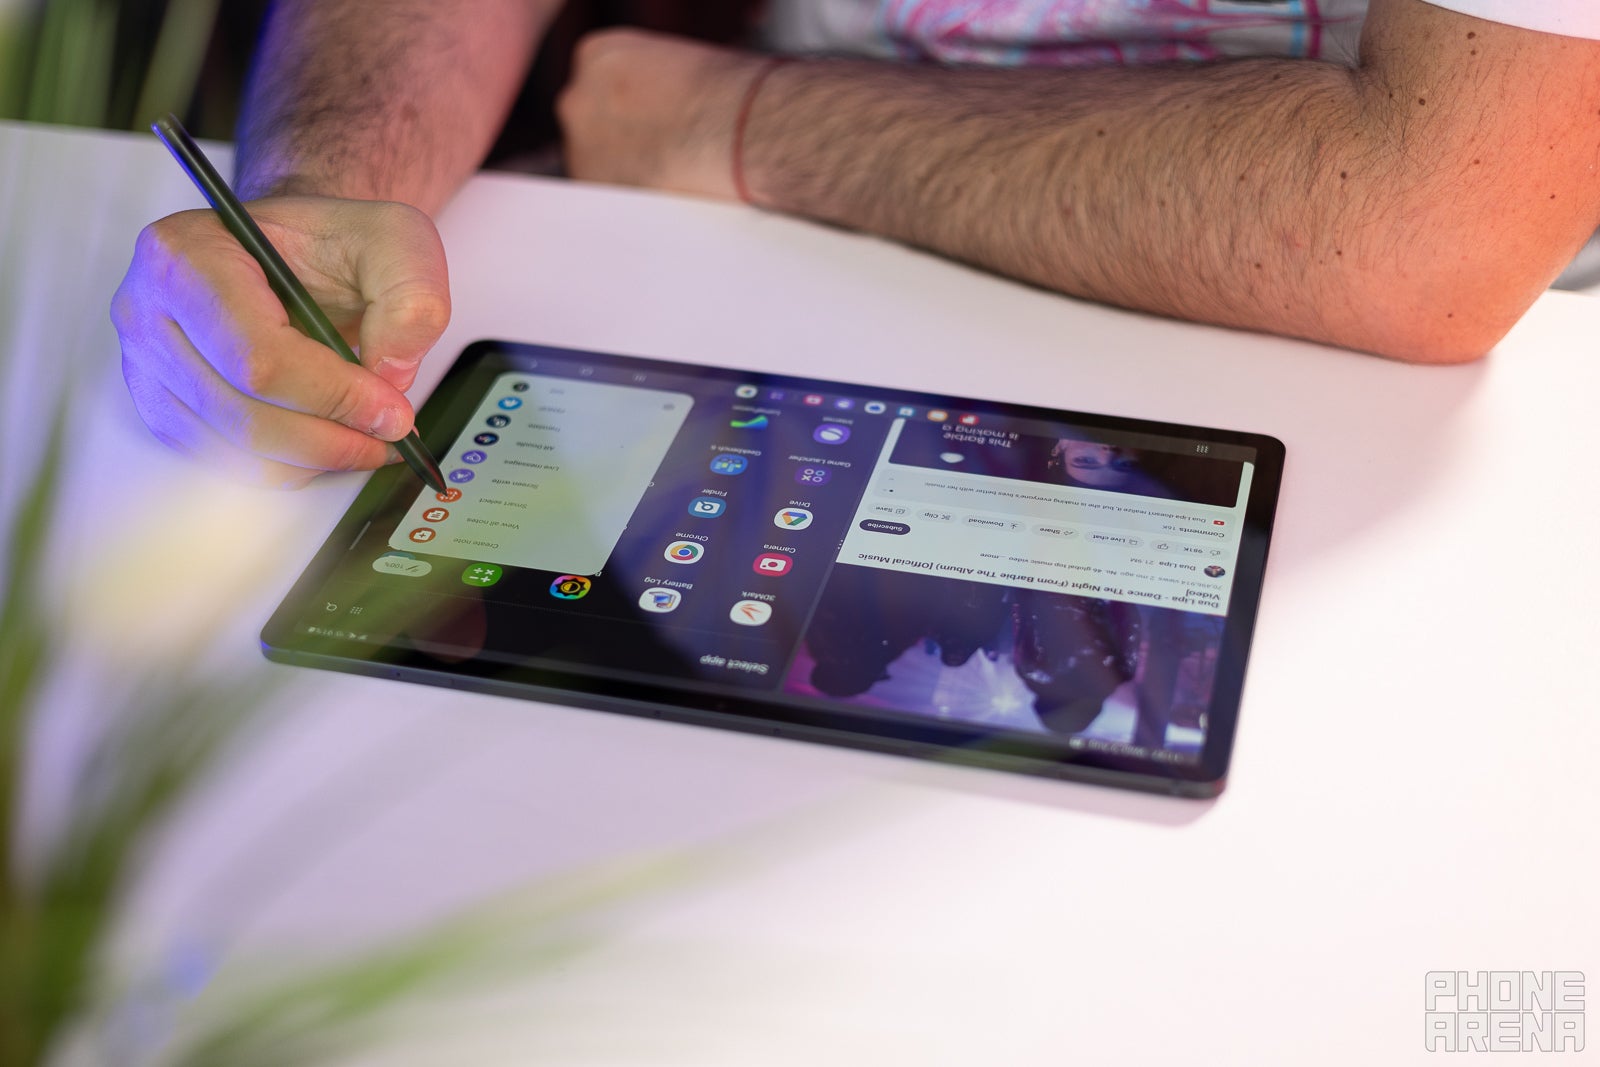 Samsung's new Galaxy Tab S9 series beats the iPad in two major ways